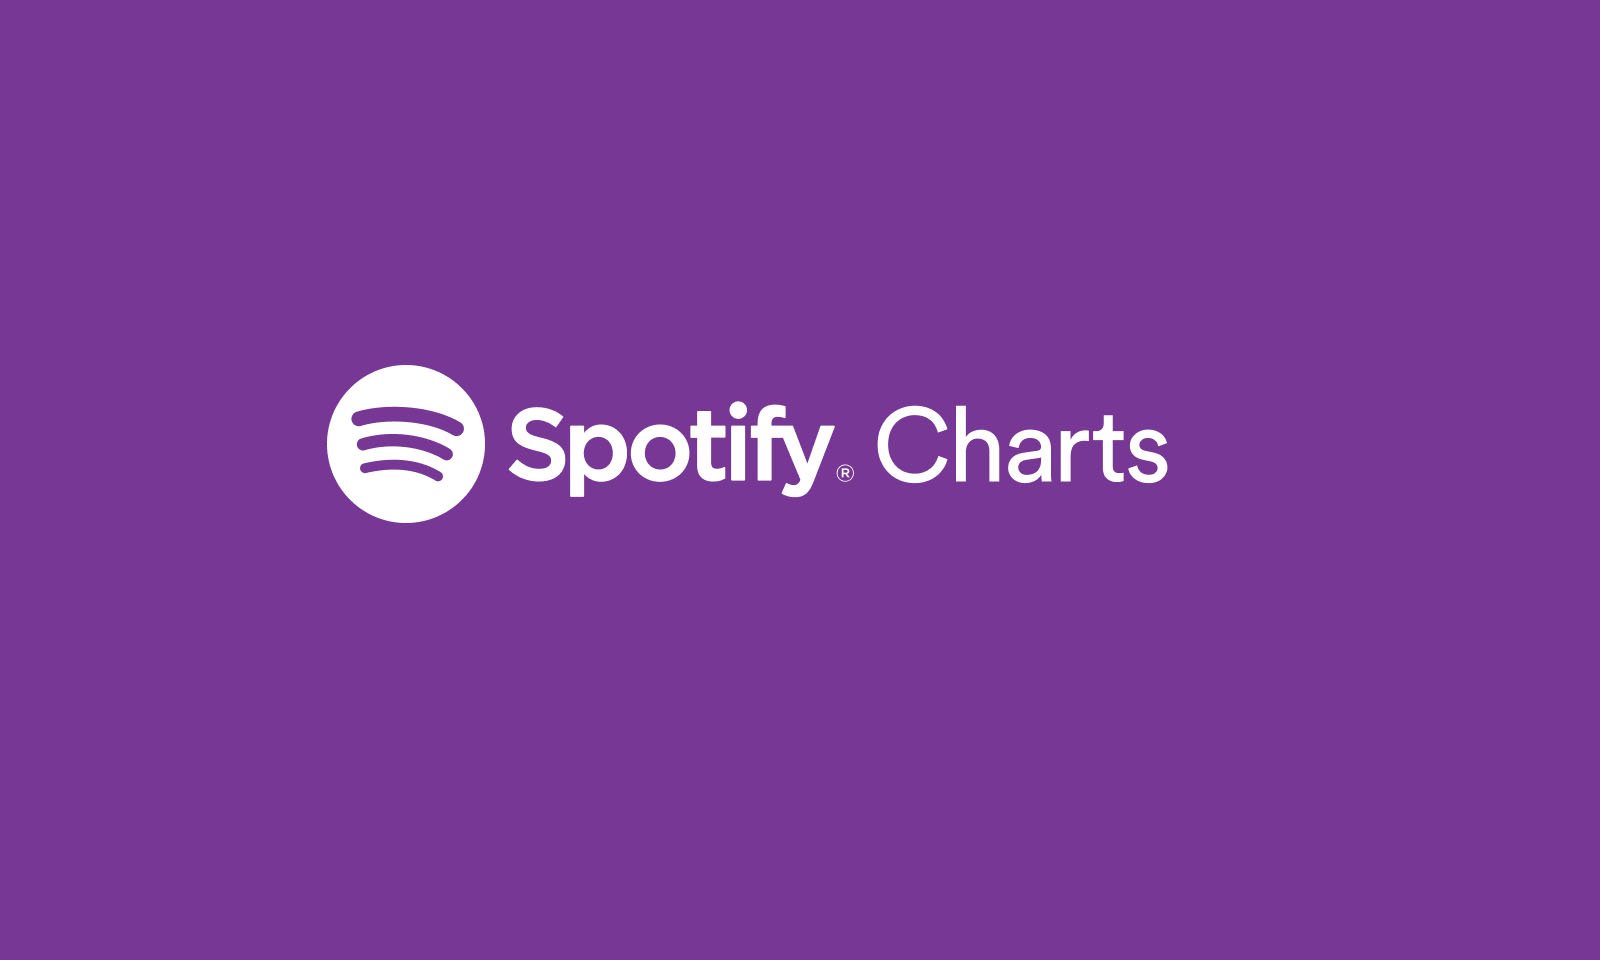 Spotify lança seu próprio sistema de charts semanal; entenda como funciona